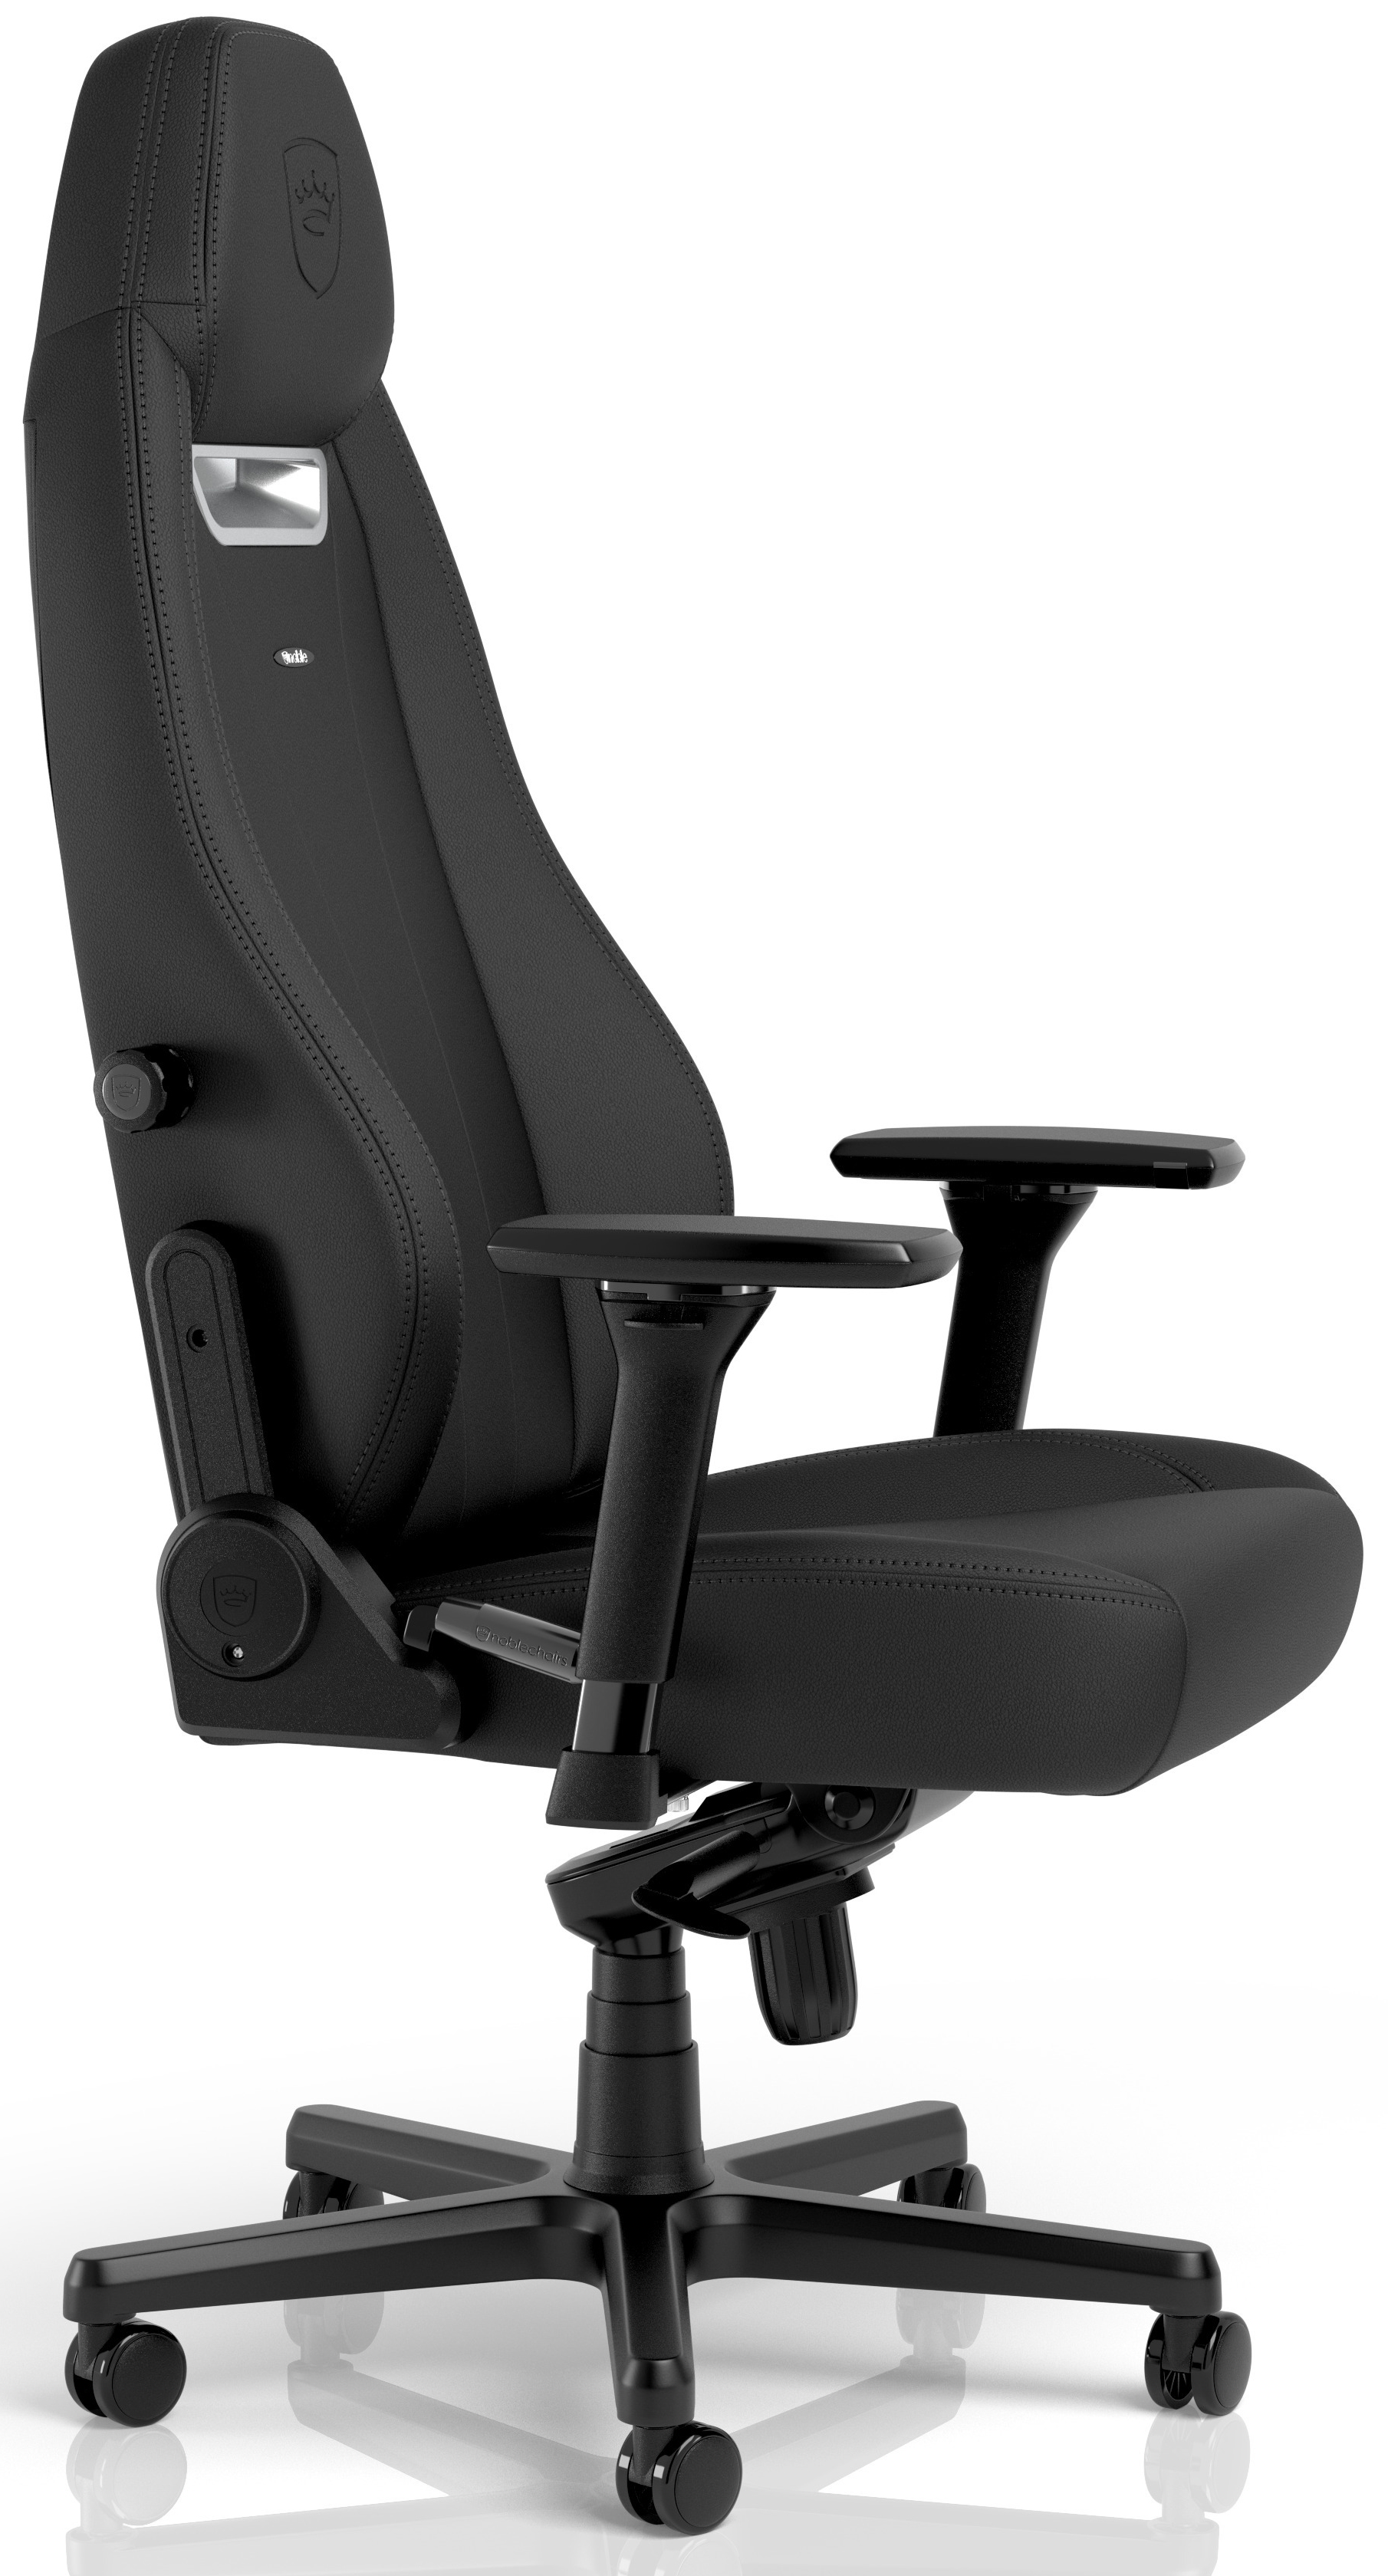 noblechairs - ** B Grade ** Cadeira noblechairs LEGEND - Black Edition